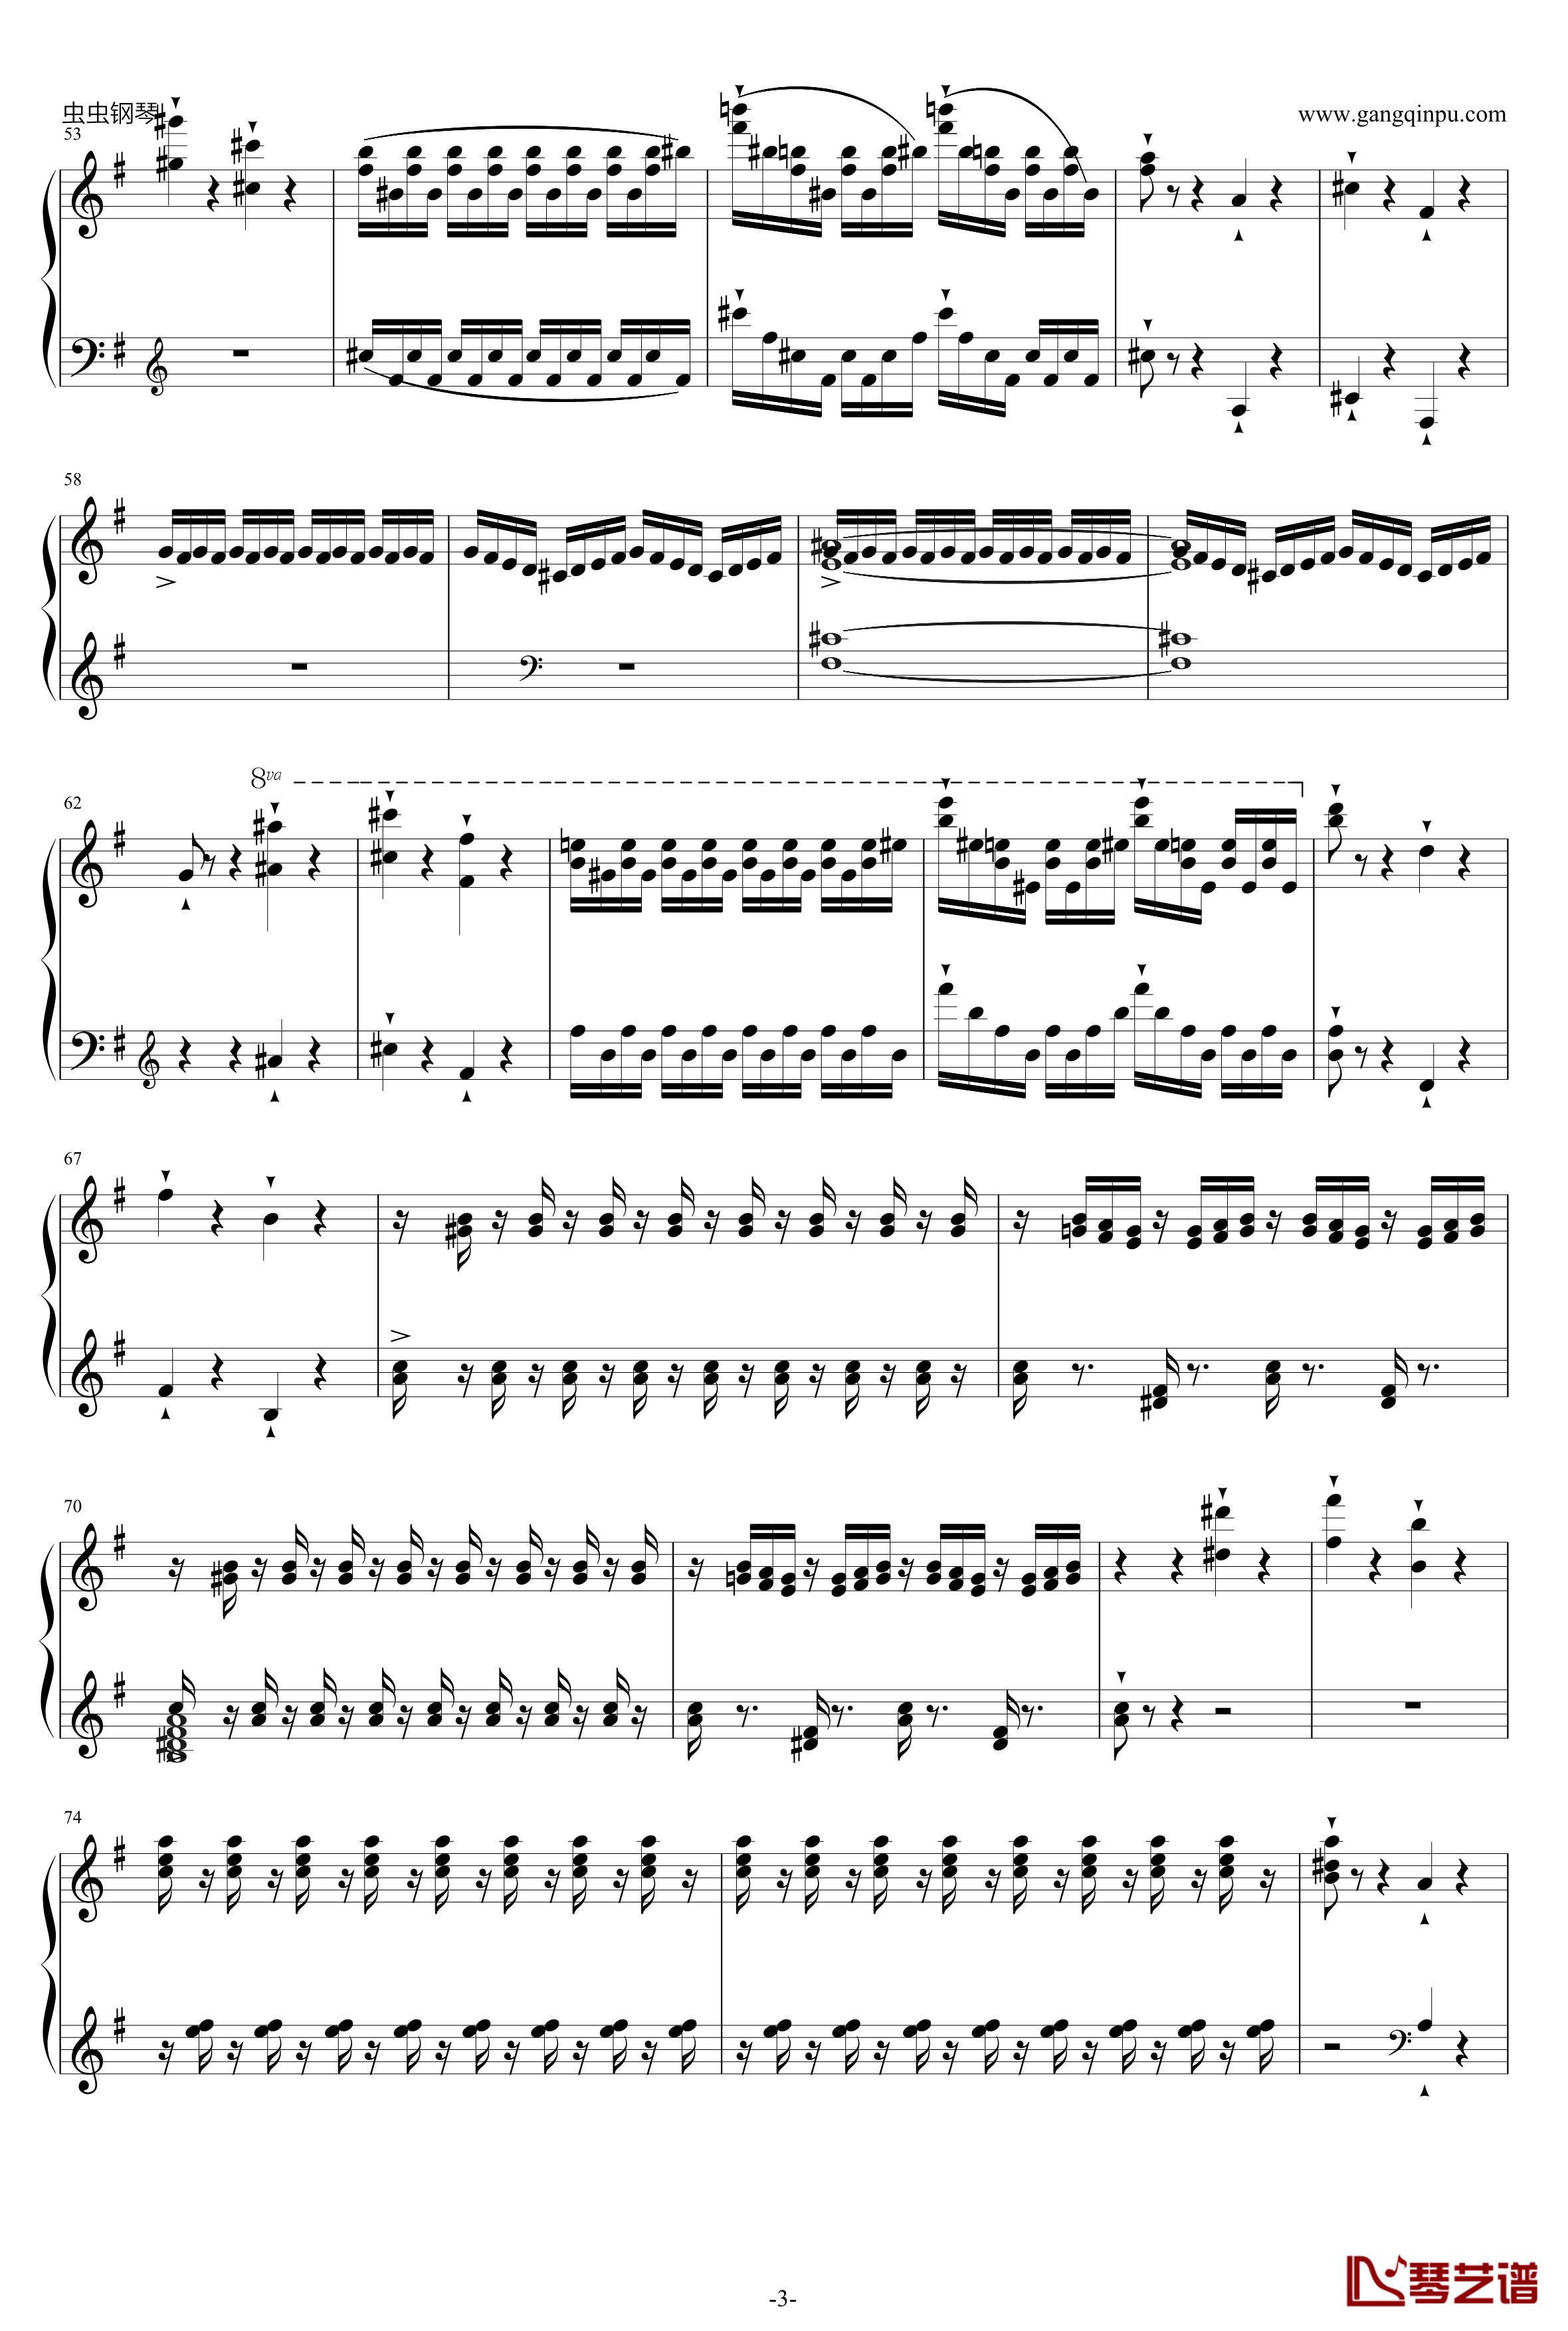 威廉·退尔序曲钢琴谱-李斯特S.5523